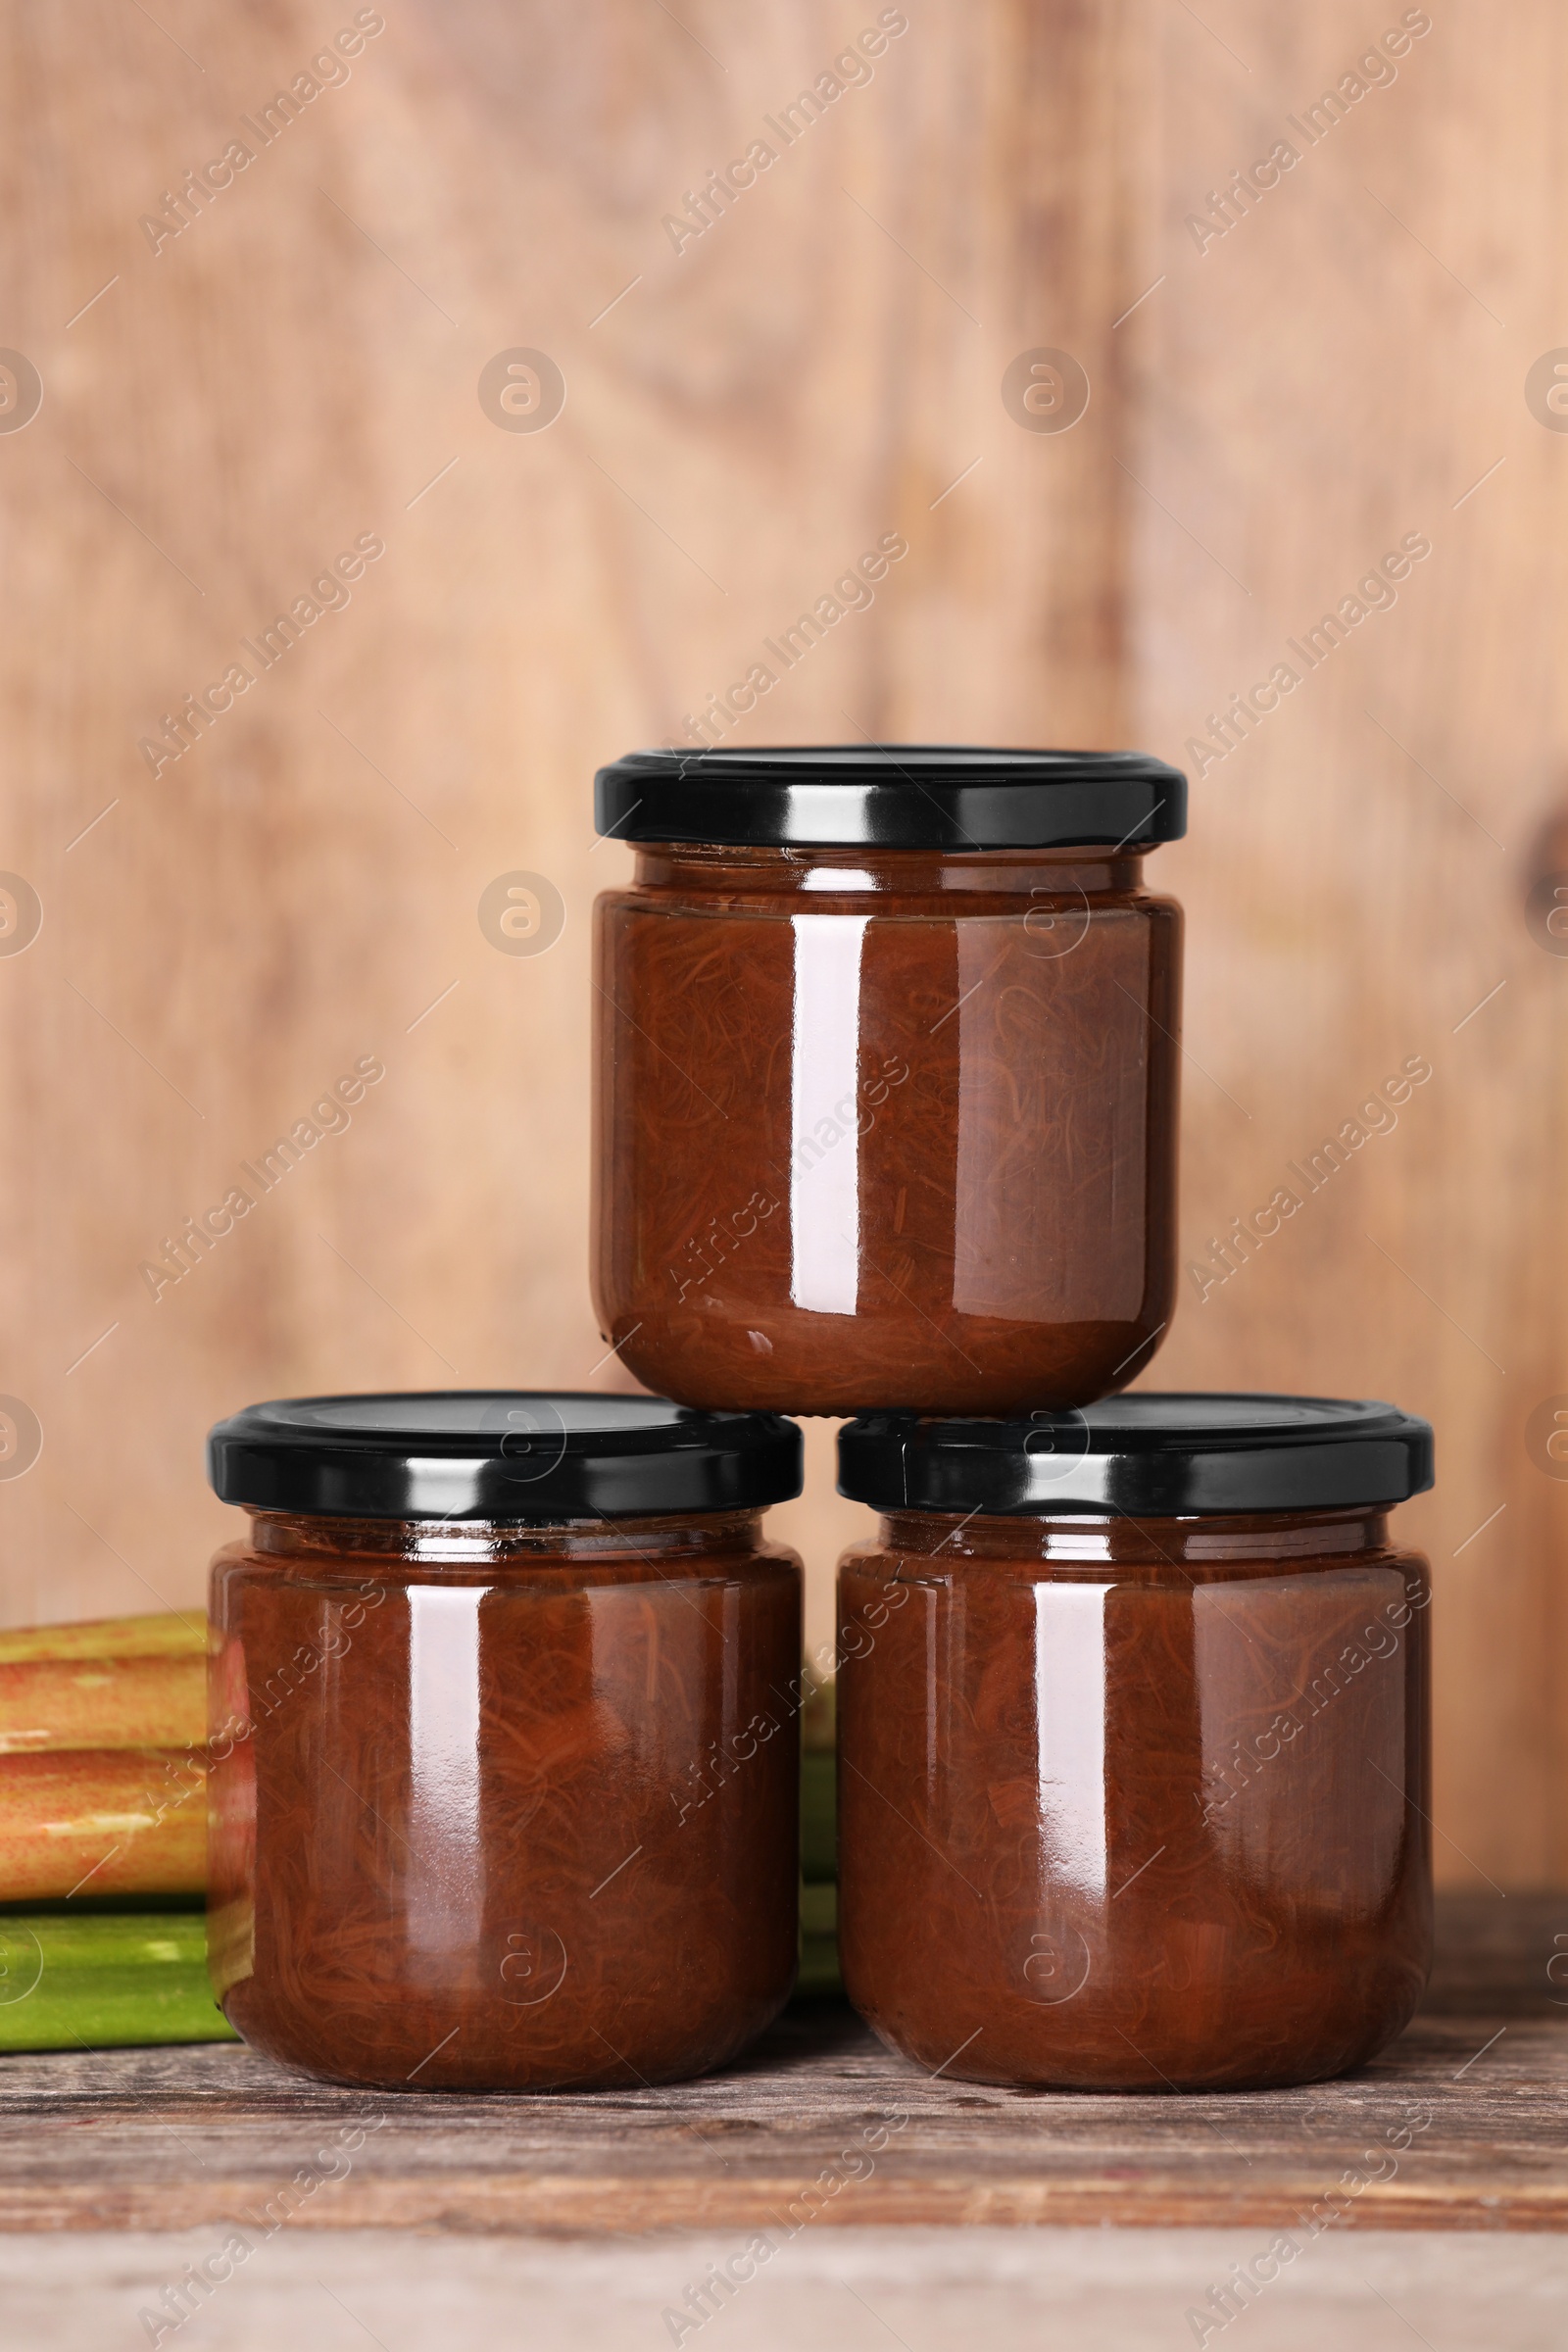 Photo of Jars of tasty rhubarb jam on wooden table